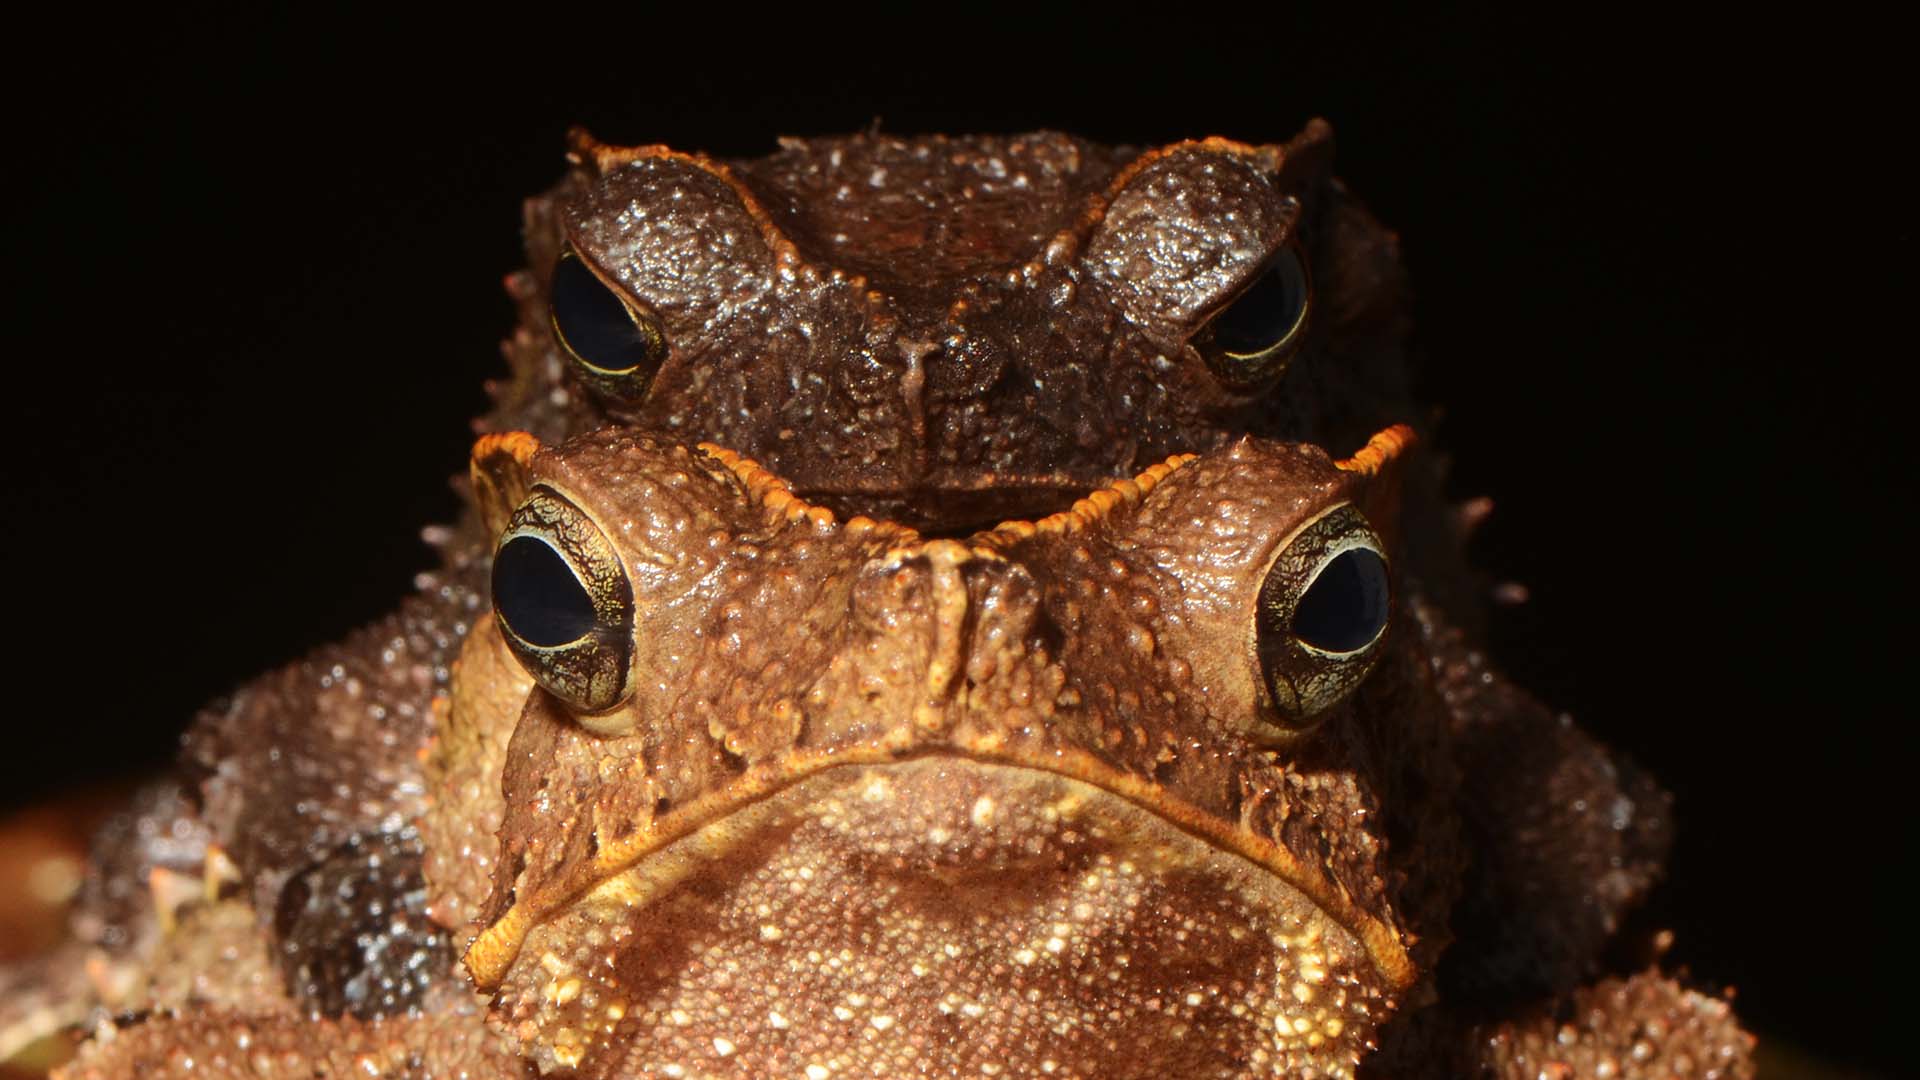 Pedro Peloso frogs